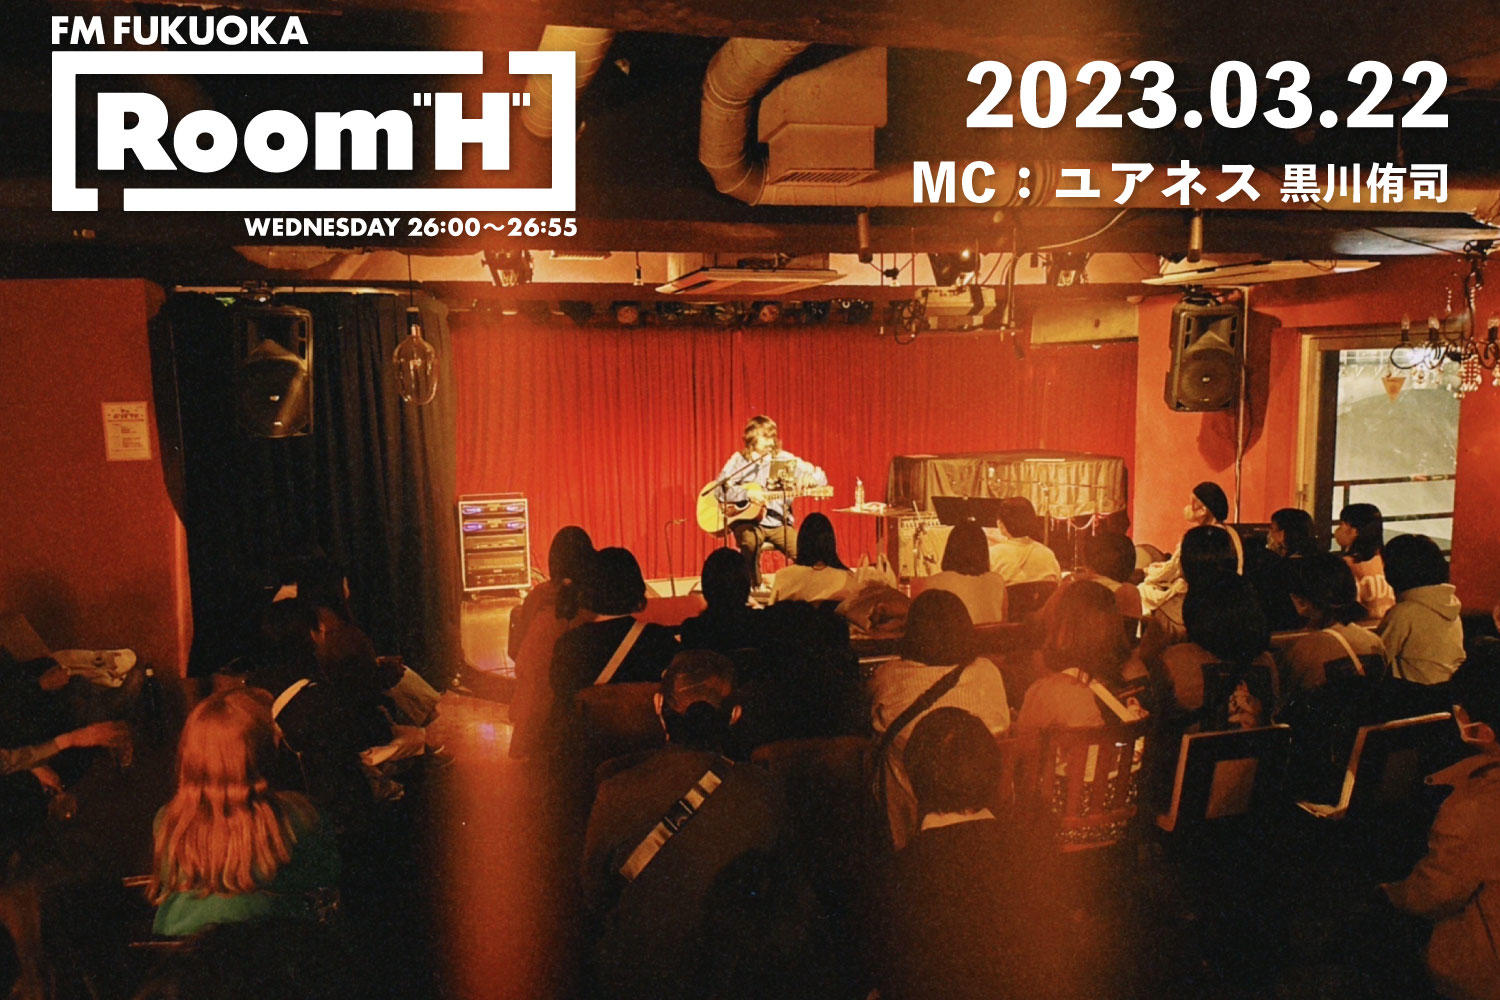 【読むラジオ】MC：黒川侑司(ユアネス) 「可愛い」というテーマで楽曲を紹介！「Room H」-2023.03.22-